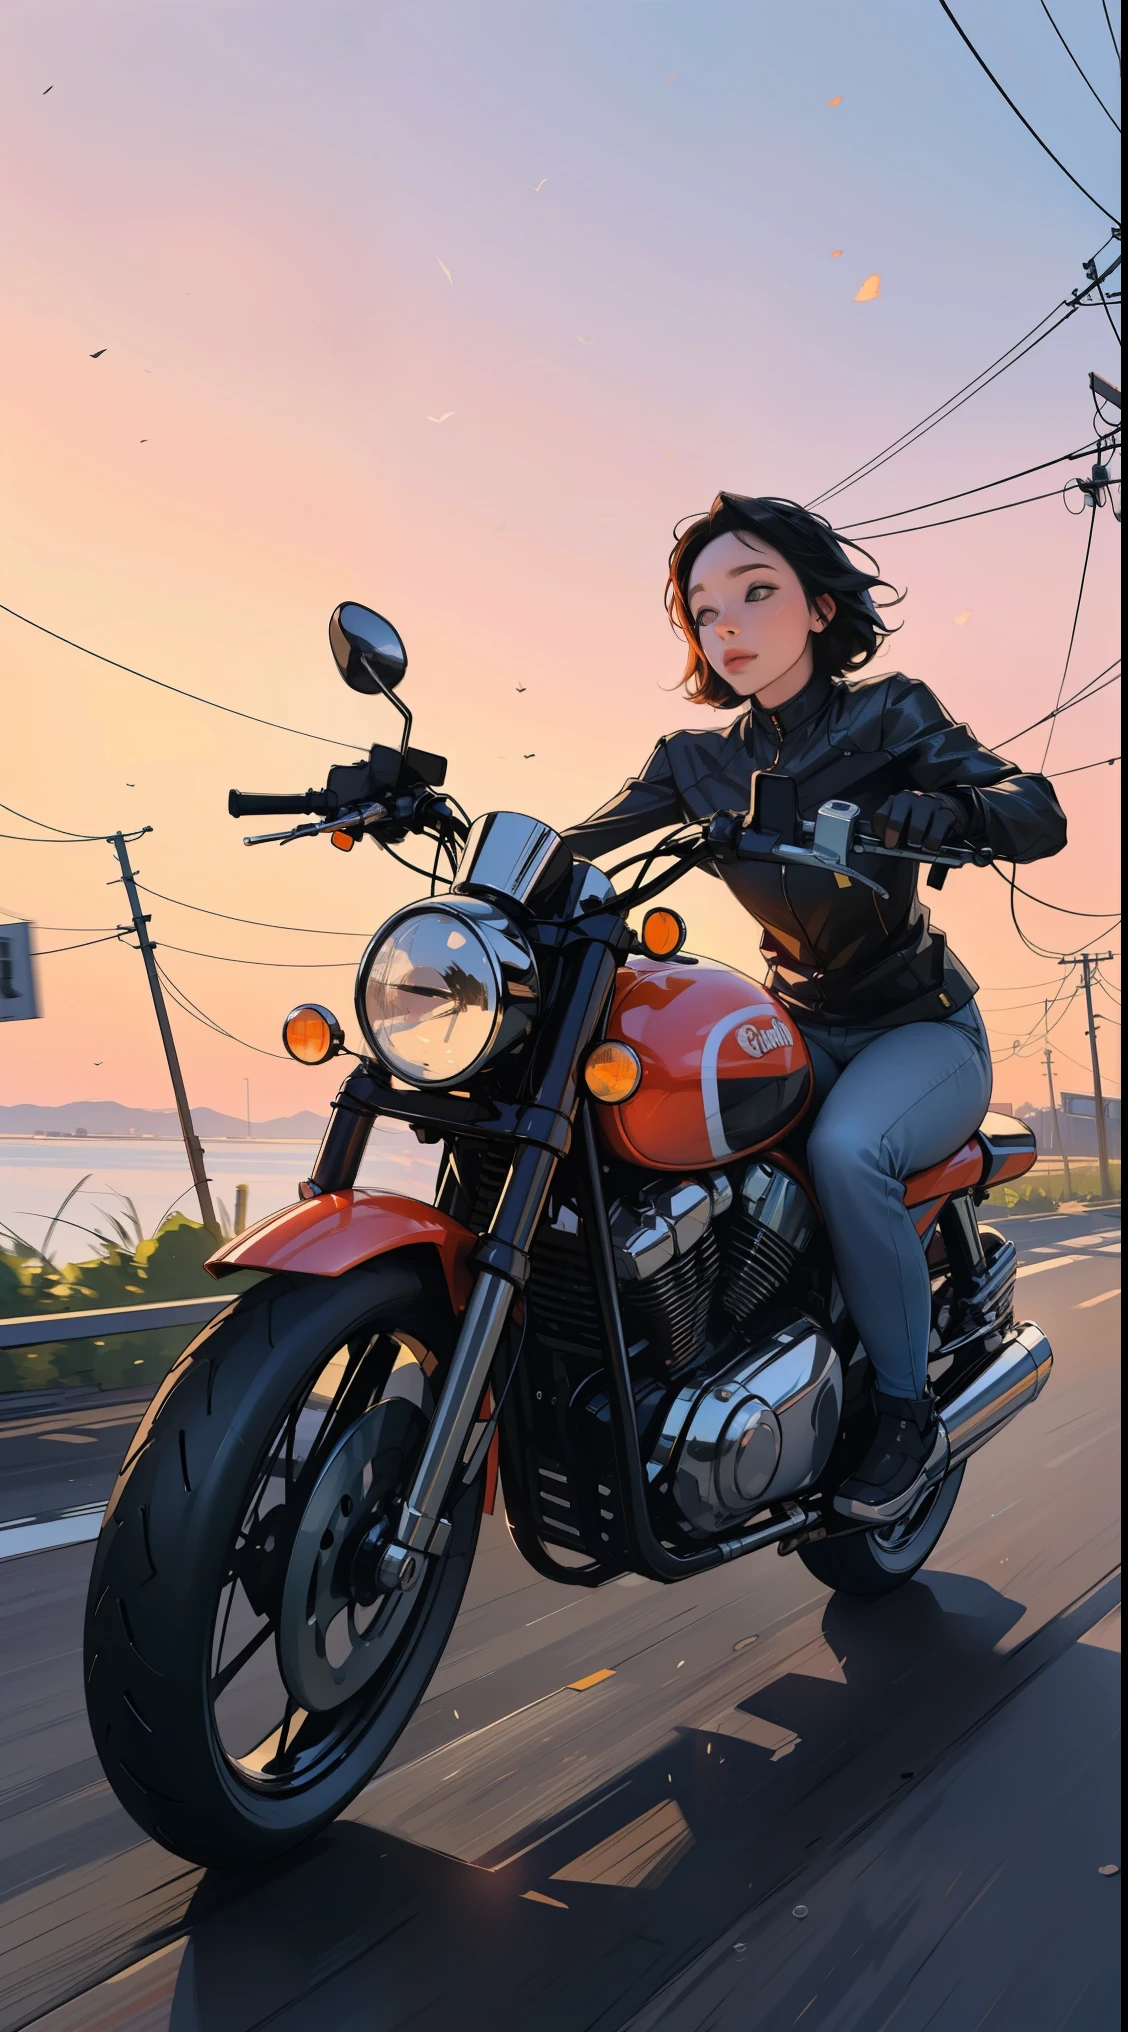 Eine Frau auf einem Motorrad, Sonnenuntergang, Lichtlecks, Umgebungs, kräftige Farbtöne, 